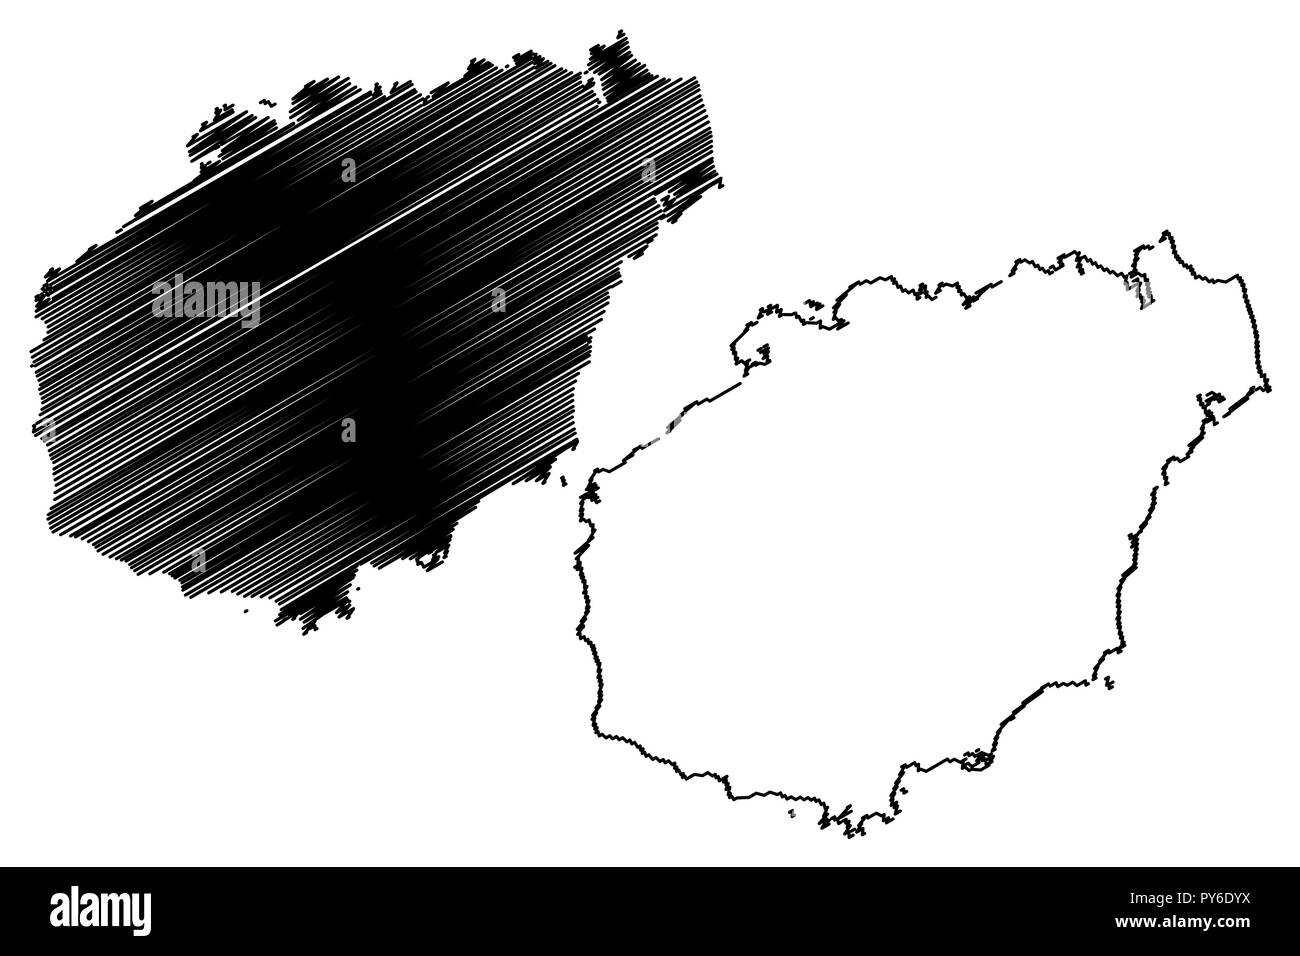 Hainan Provinz (administrative divisions von China, China, Volksrepublik China, VR China) Karte Vektor-illustration, kritzeln Skizze Hainan Insel Karte Stock Vektor